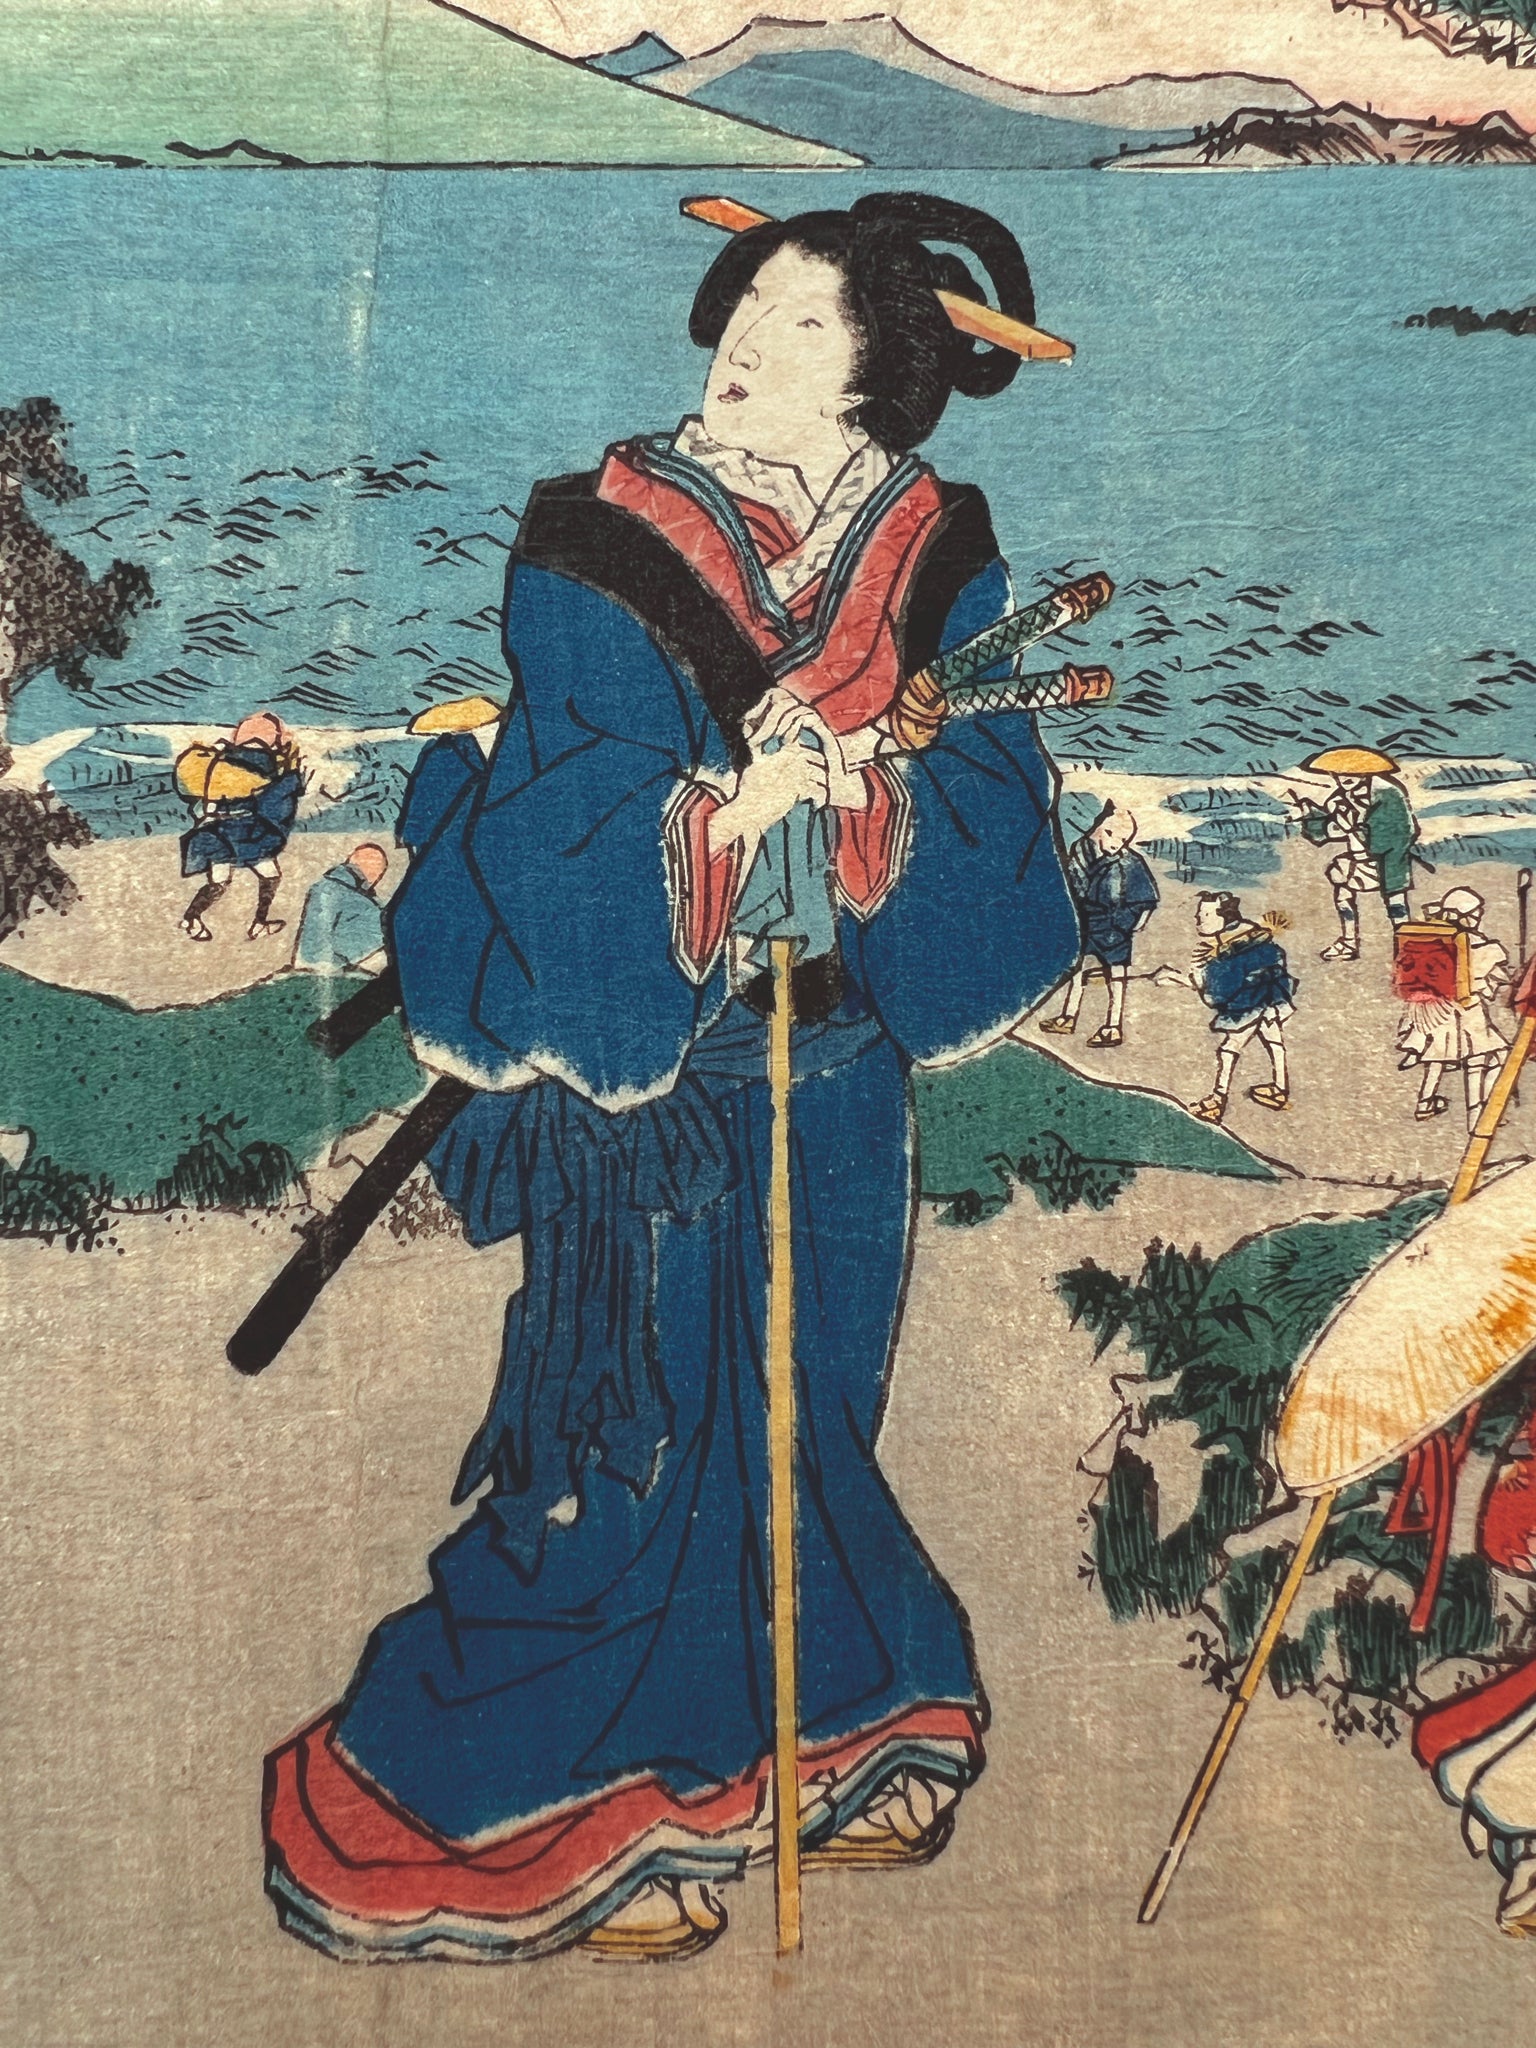 Le voyage de la mariée, une courtisane en kimono bleu avec canne et sabre